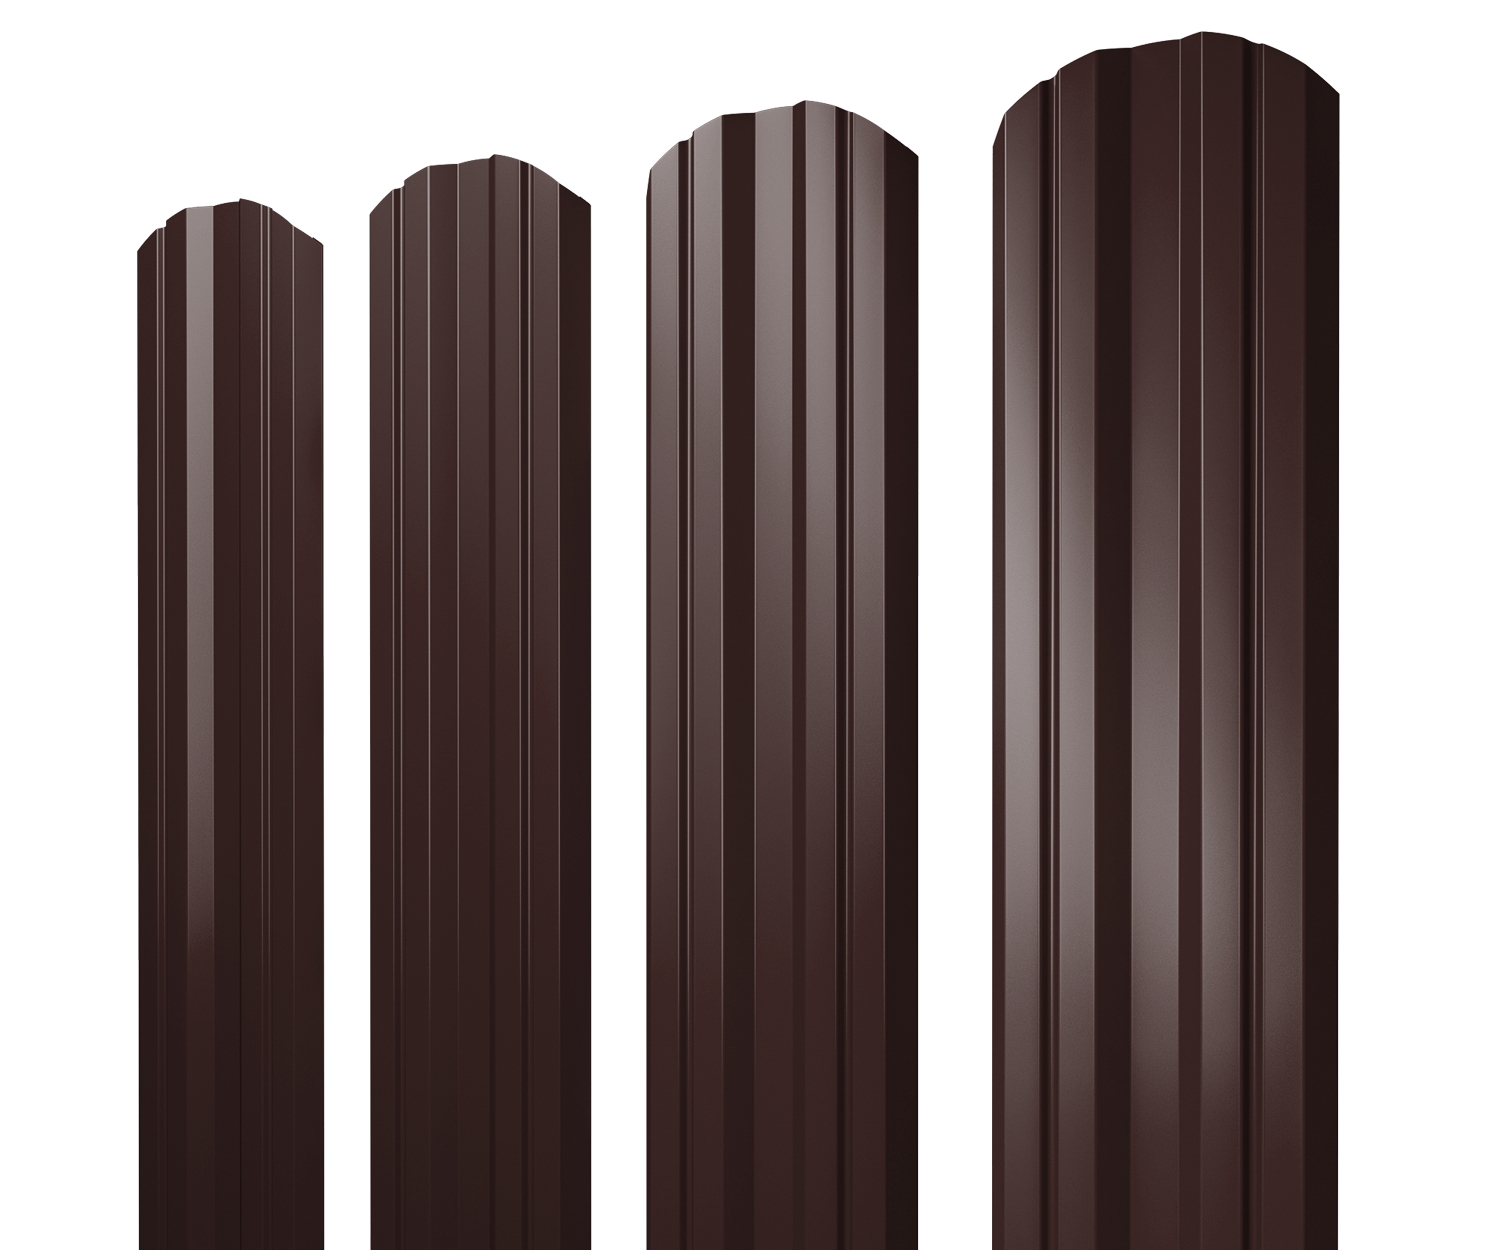 Штакетник Twin фигурный 0,5 GreenCoat Pural BT RR 887 шоколадно-коричневый (RAL 8017 шоколад)